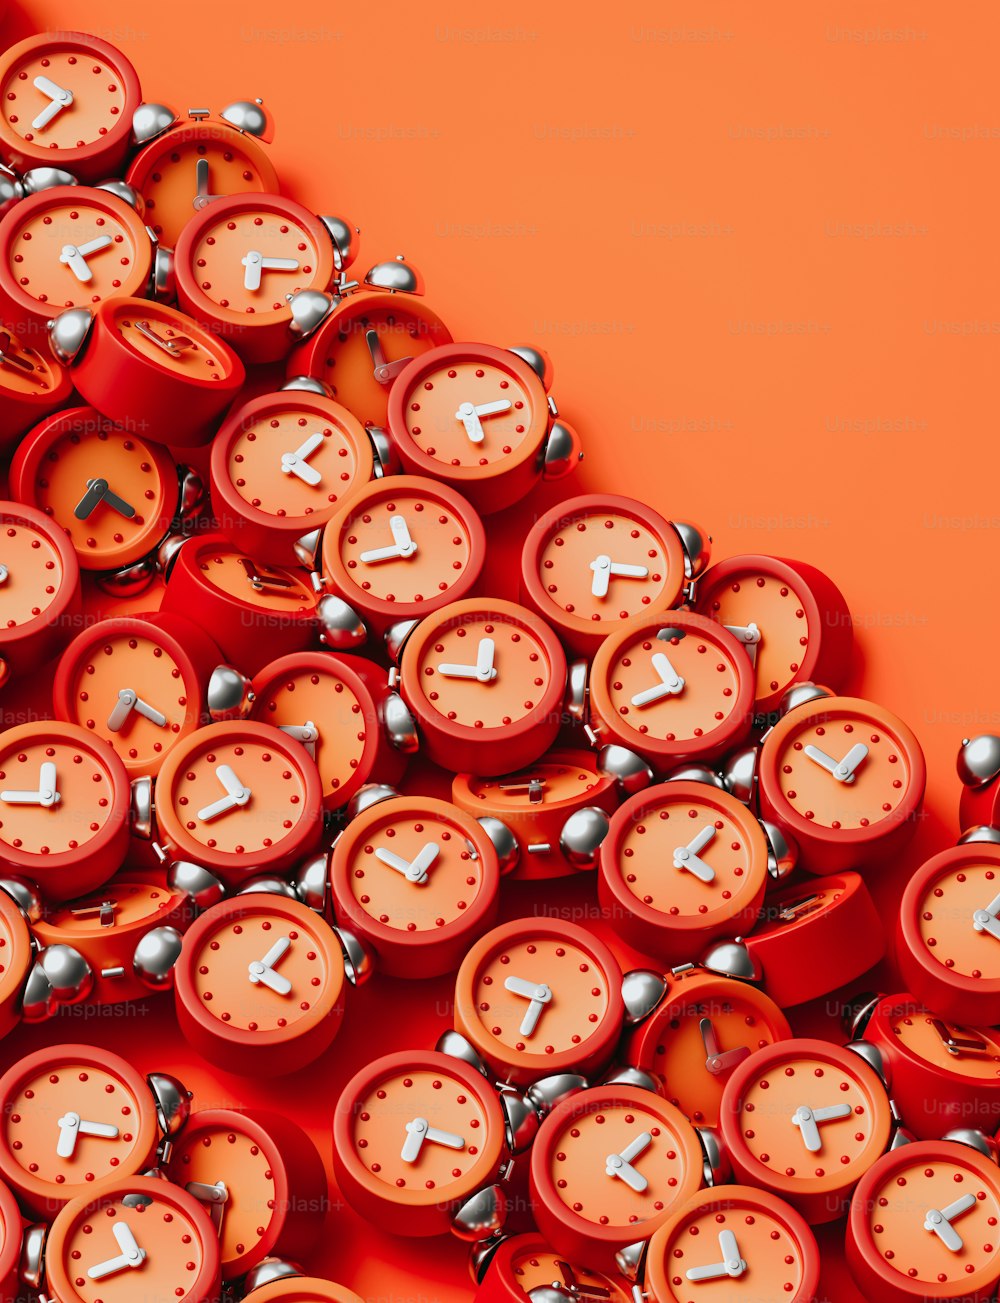 Un gruppo di orologi rossi seduti uno sopra l'altro